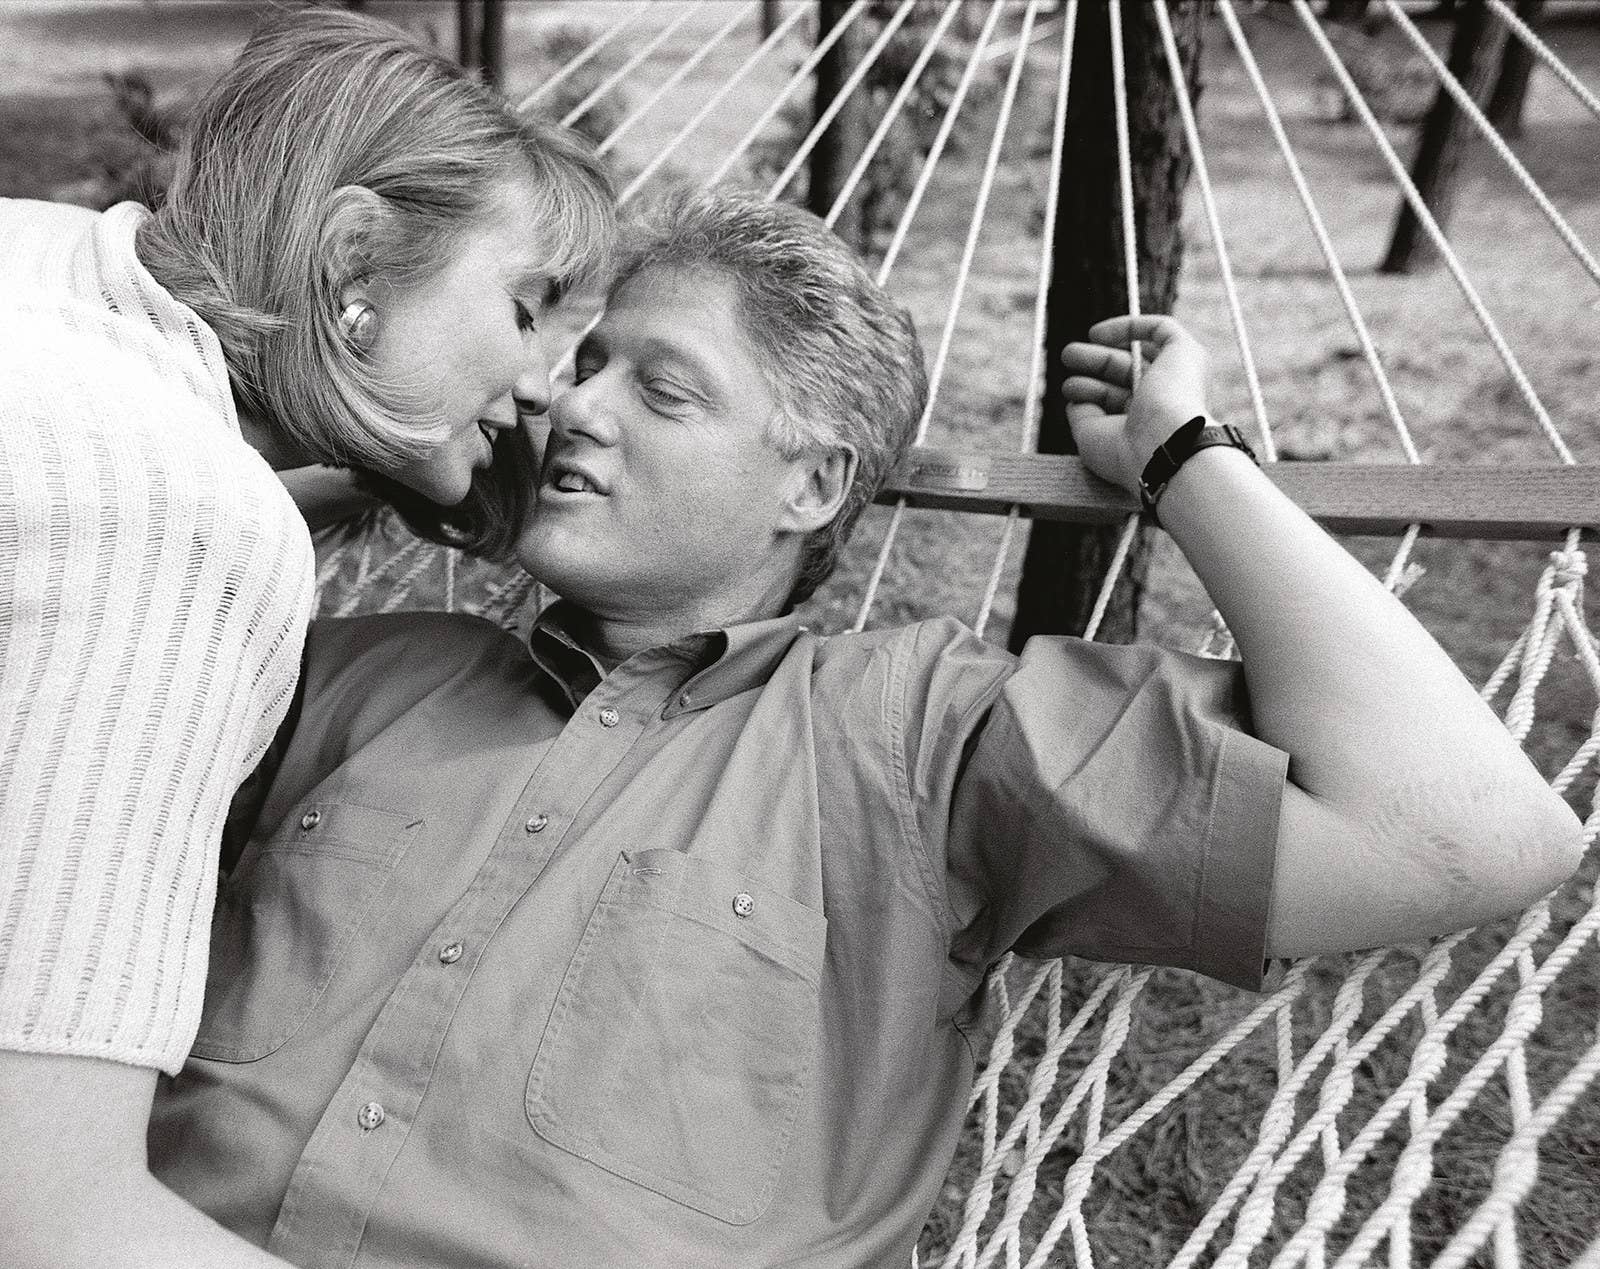 Bill e Hillary Clinton se beijam no palácio do governador, em Little Rock, Arkansas, 1992.